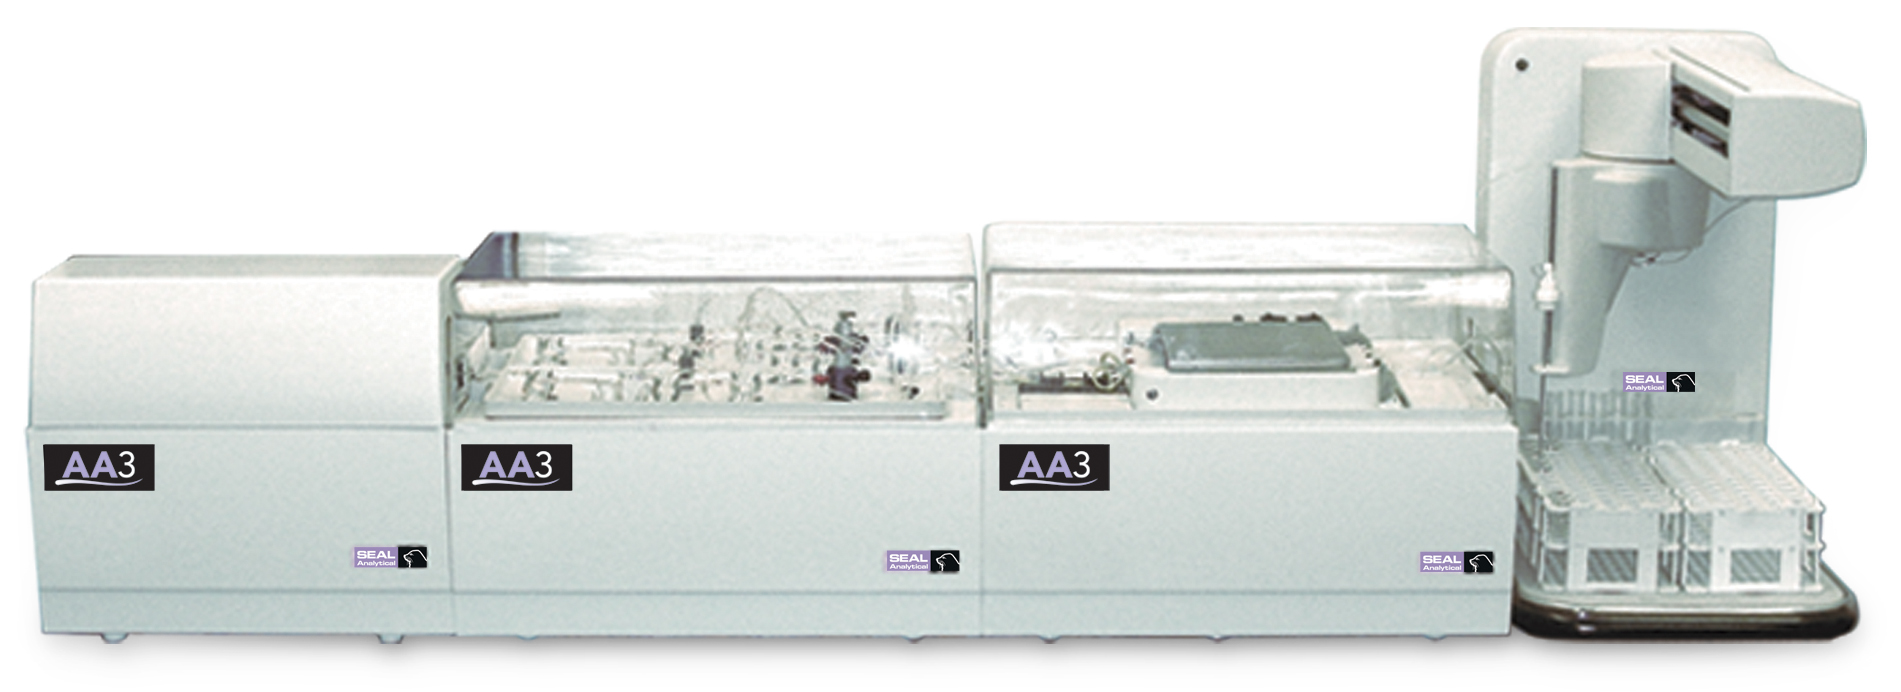 AA3 segmented flow analyzer